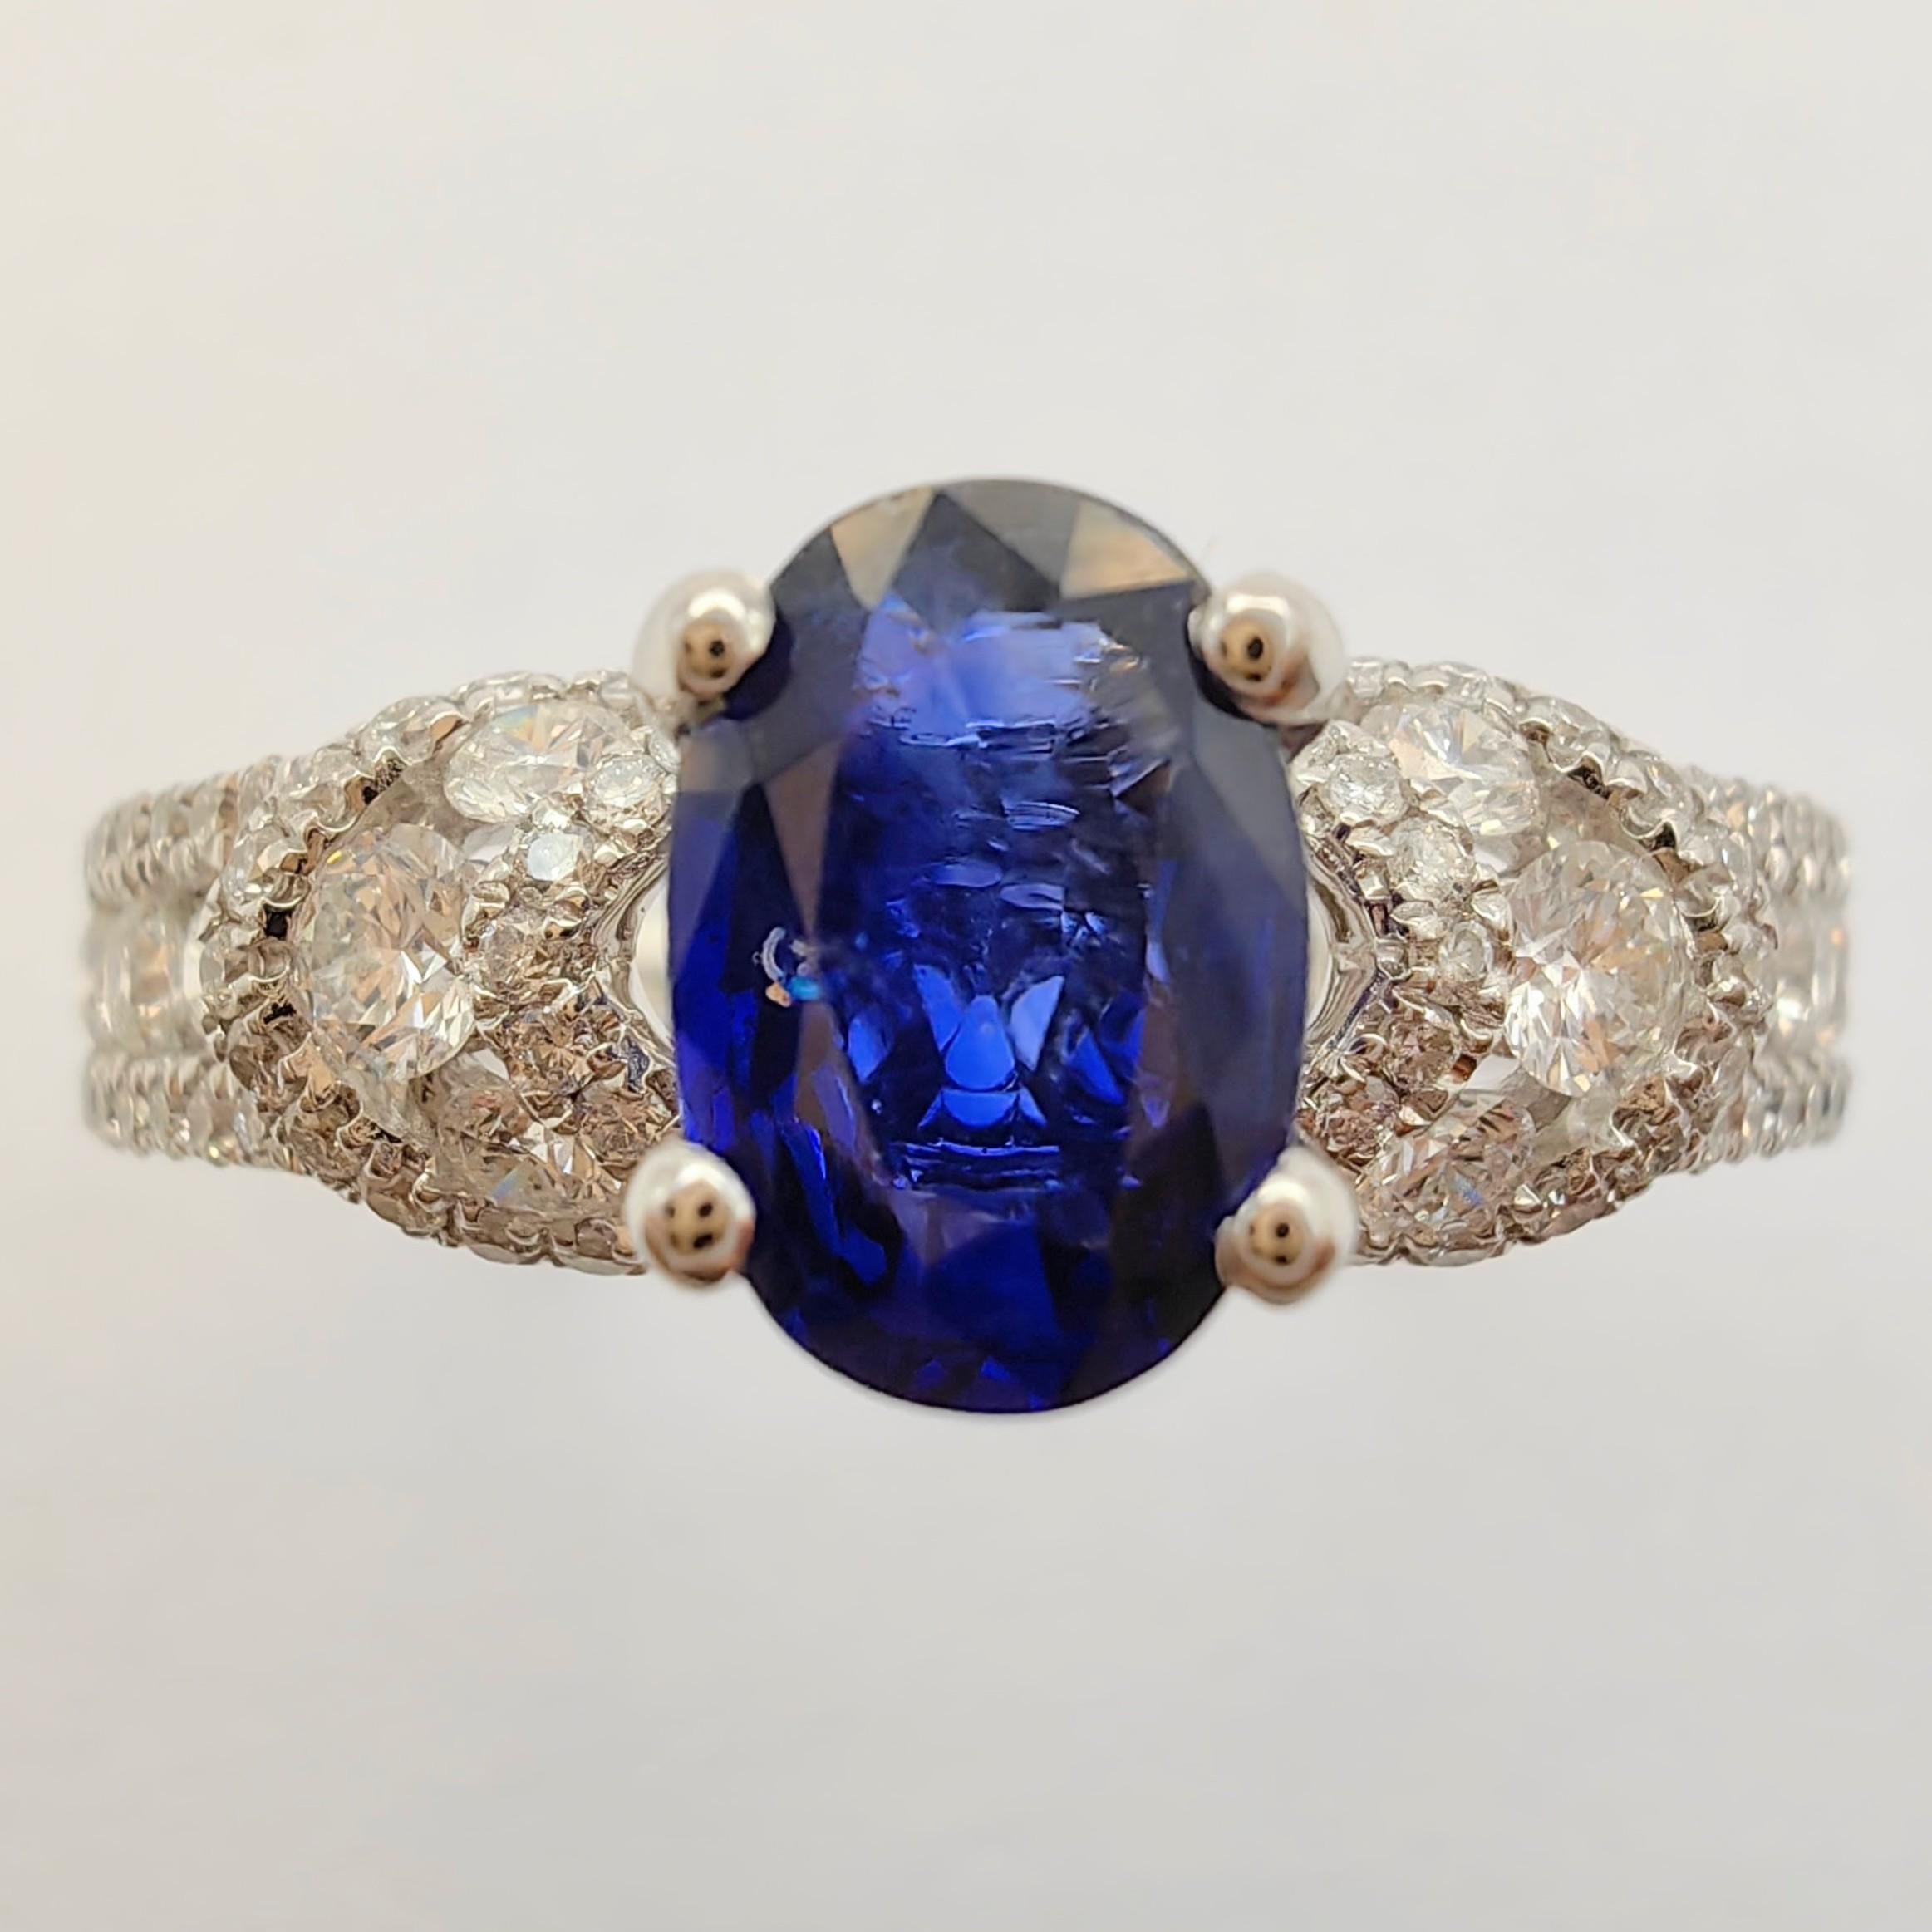 Wir präsentieren unseren atemberaubenden .88 Karat Oval-Cut Sapphire 88 Diamond Cluster Ring in 18k Weißgold. Dieses exquisite Schmuckstück ist ein wahres Zeugnis von Raffinesse und Eleganz. Dieser atemberaubende Ring wurde mit Präzision und